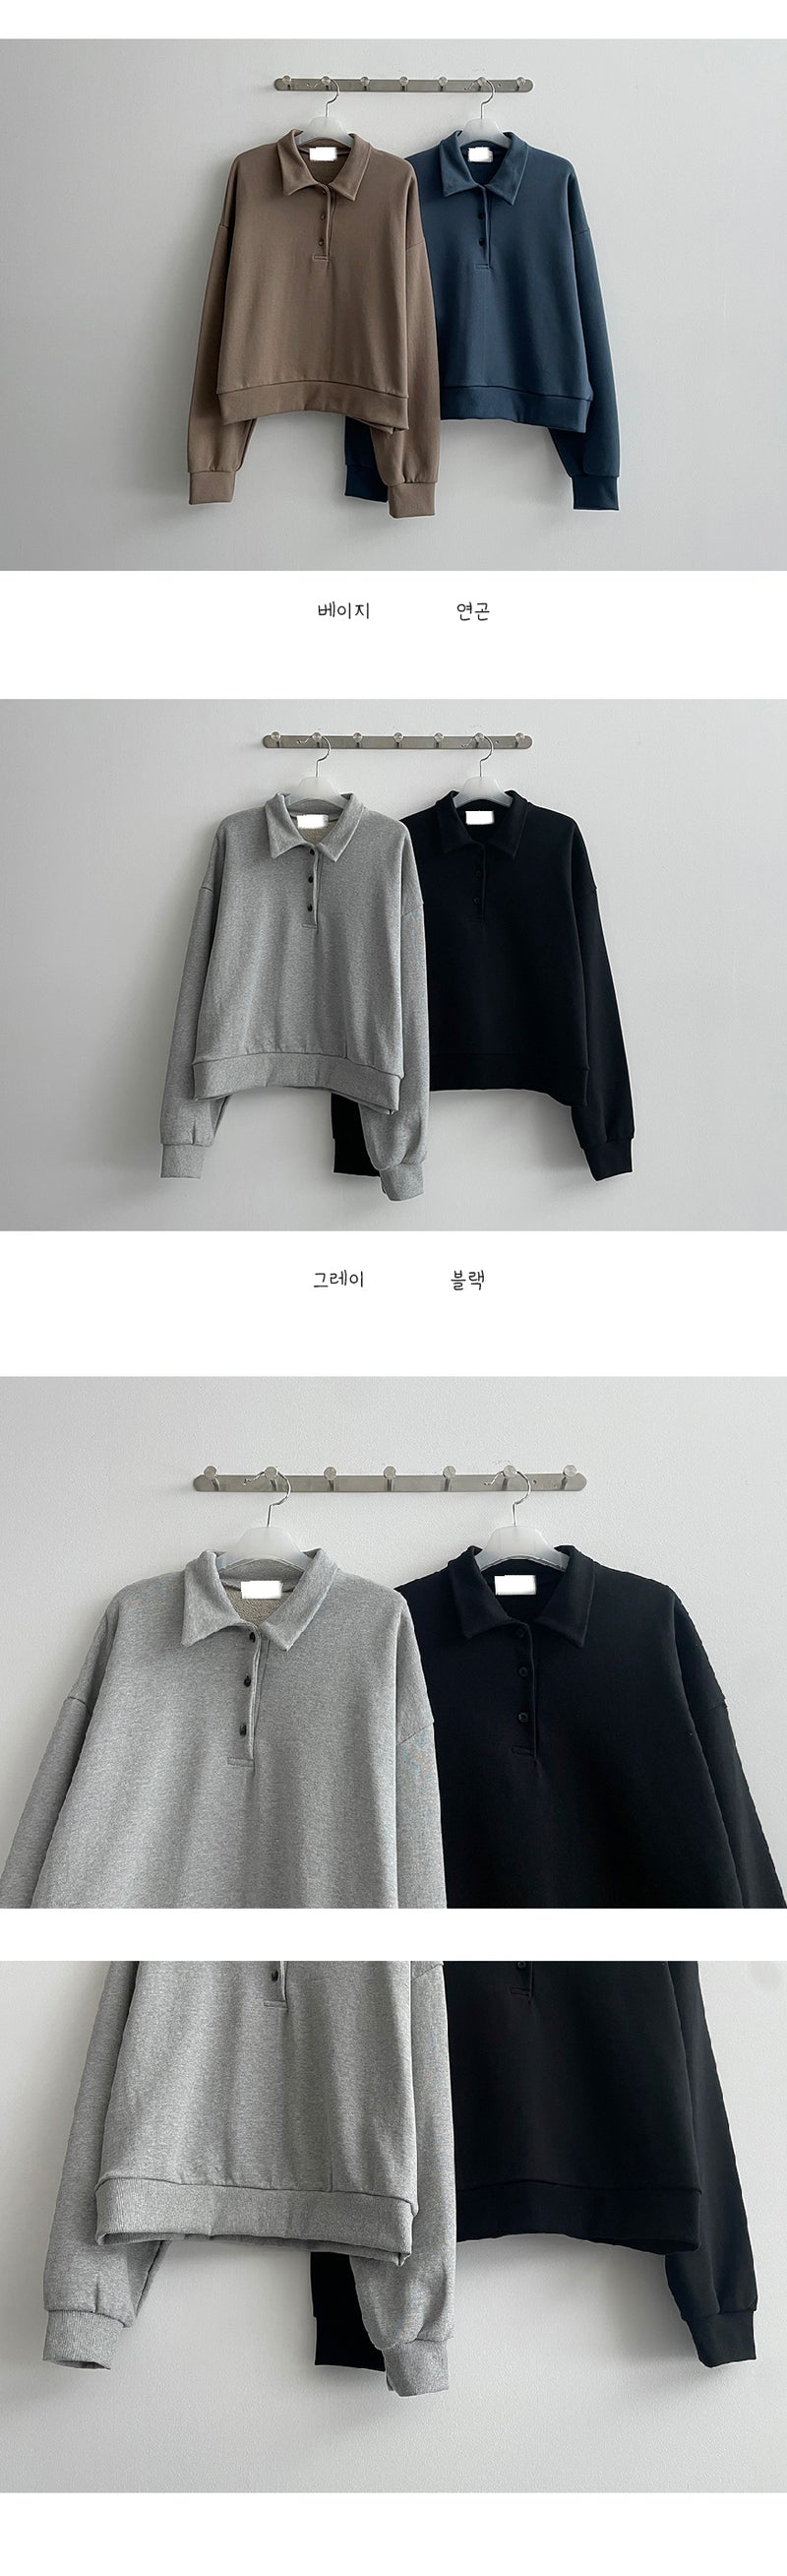 ブテンボタンカラーショートクロップスウェットシャツ/Buten button collar short cropped sweatshirt